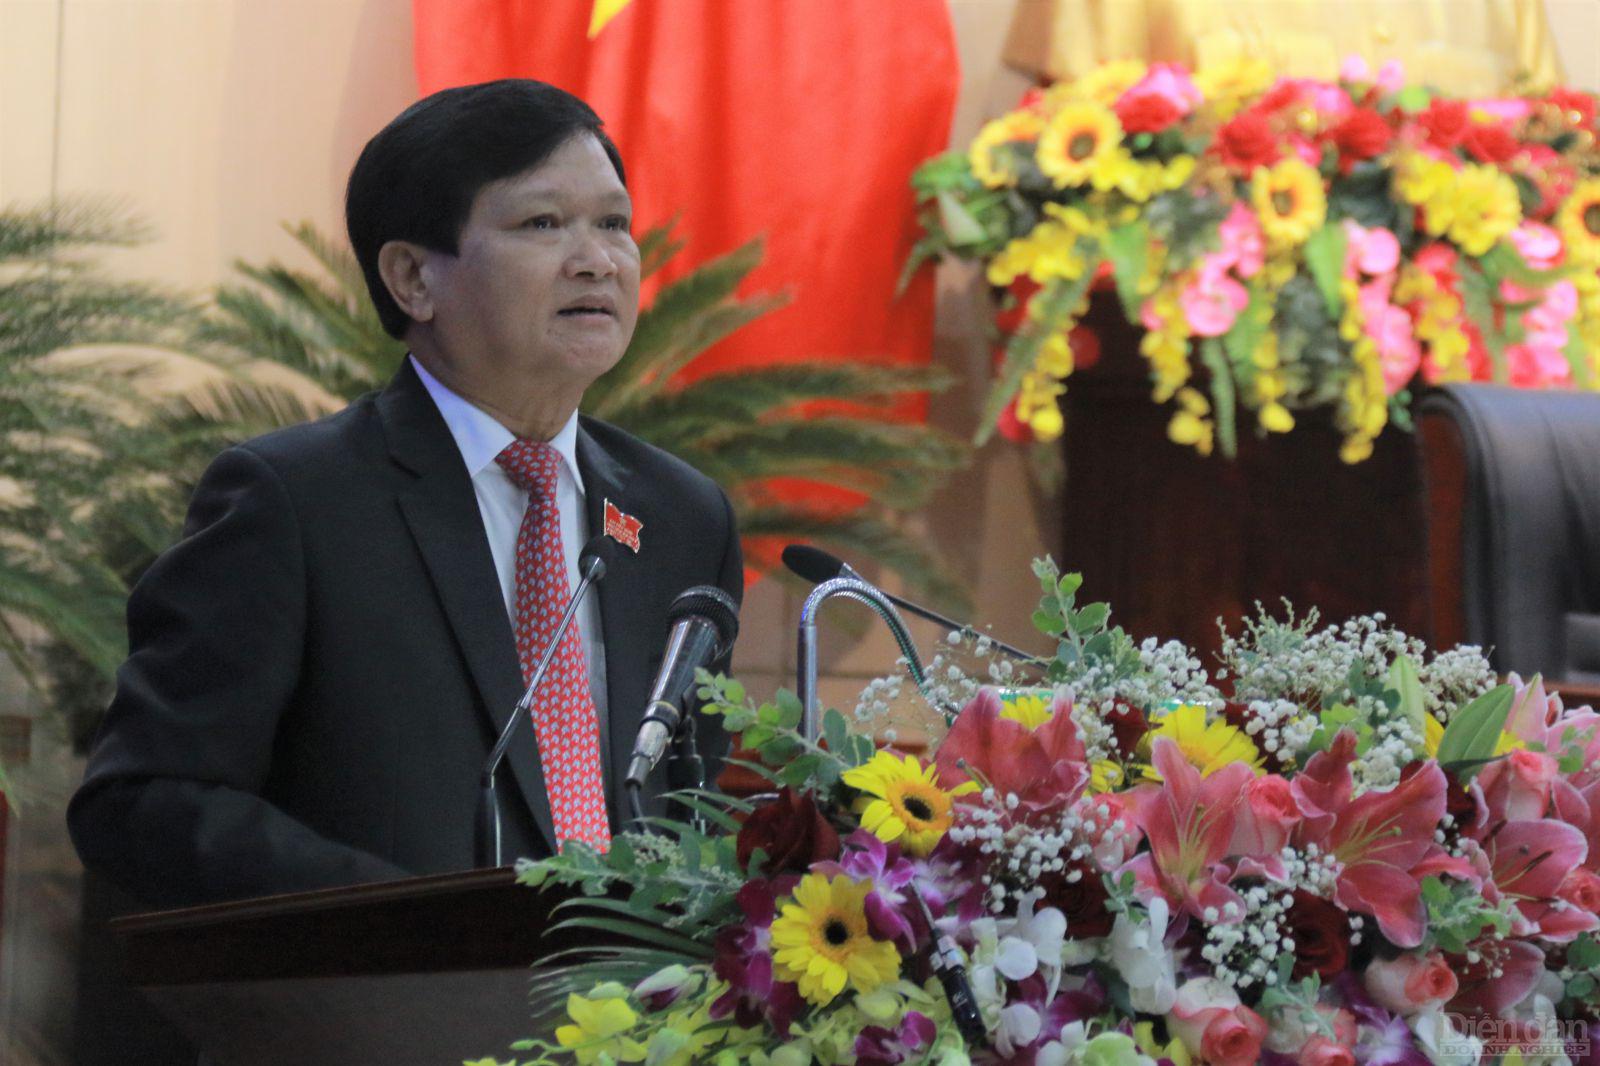 Ông Nguyễn Nho Trung – Chủ tịch Hội đồng nhân dân TP. Đà Nẵng nhận định kỳ họp diễn ra trong thời điểm kết thúc giai đoạn 2015-2020 cũng là thời điểm thành phố đối diện với những hậu quả vô cùng nặng nề của dịch bệnh COVID-19 và thiên tai